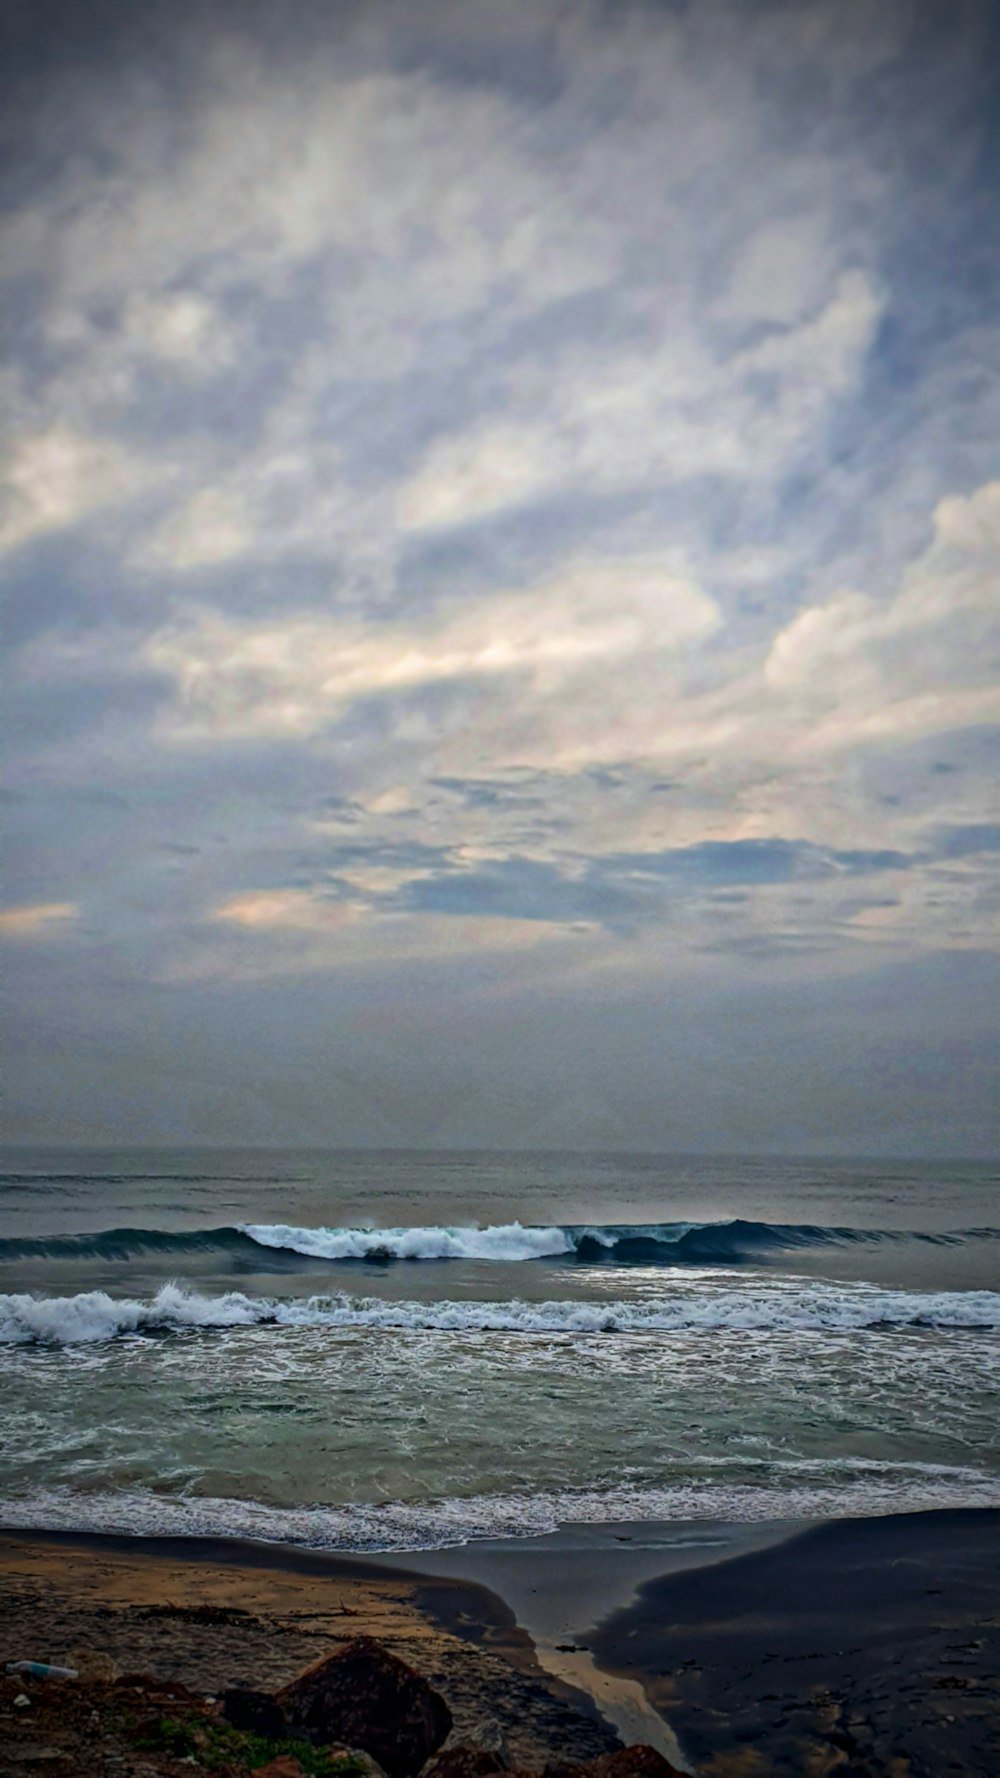 onde dell'oceano sotto il cielo nuvoloso durante il giorno